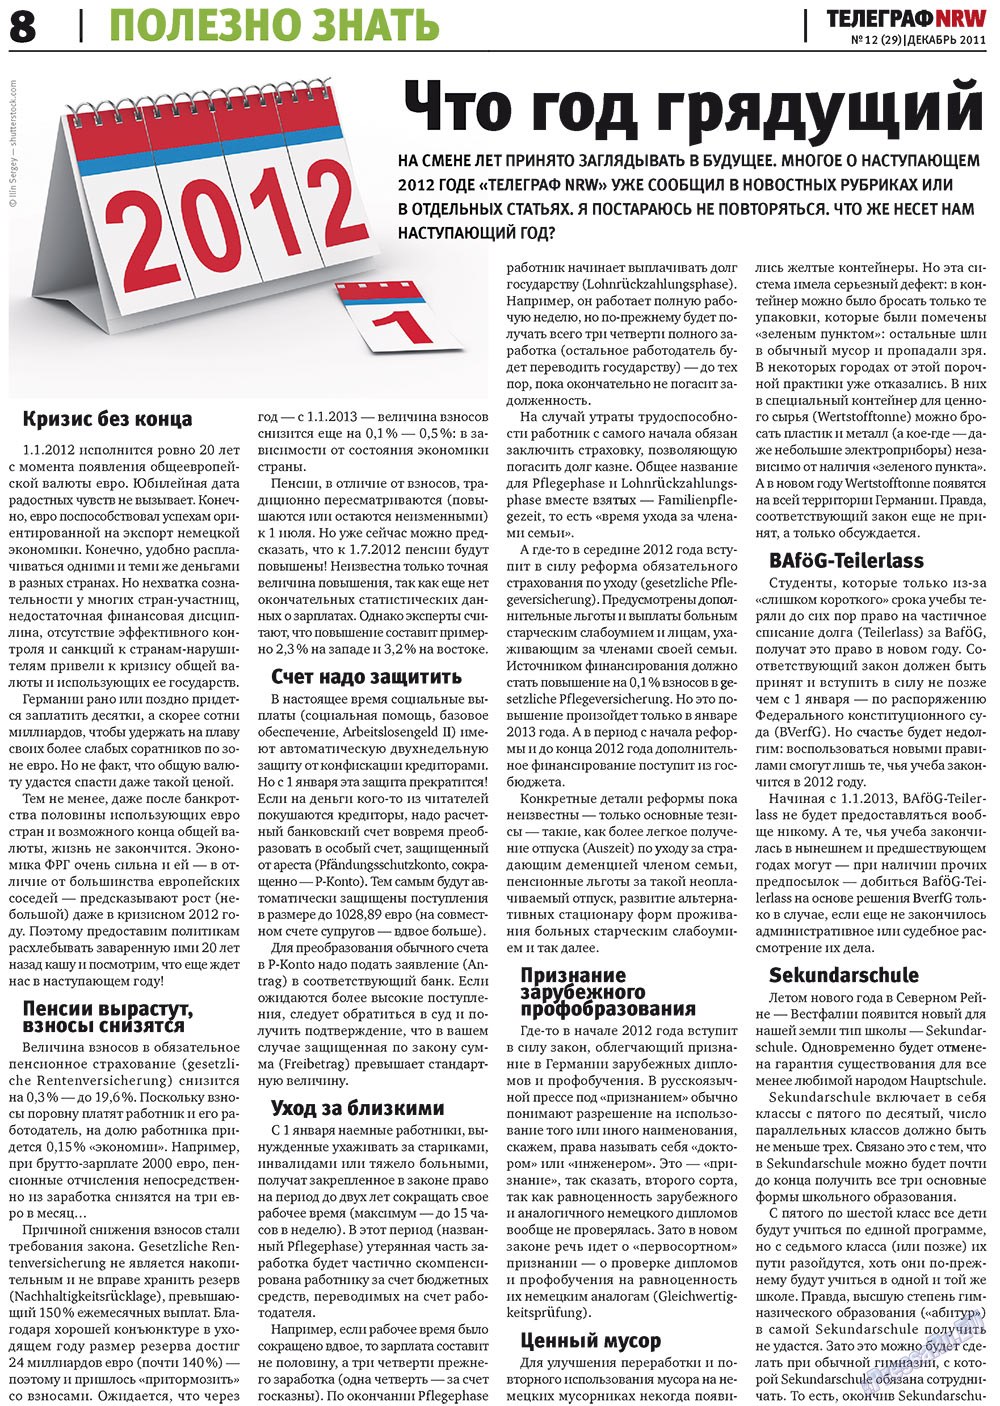 Телеграф NRW (газета). 2011 год, номер 12, стр. 8